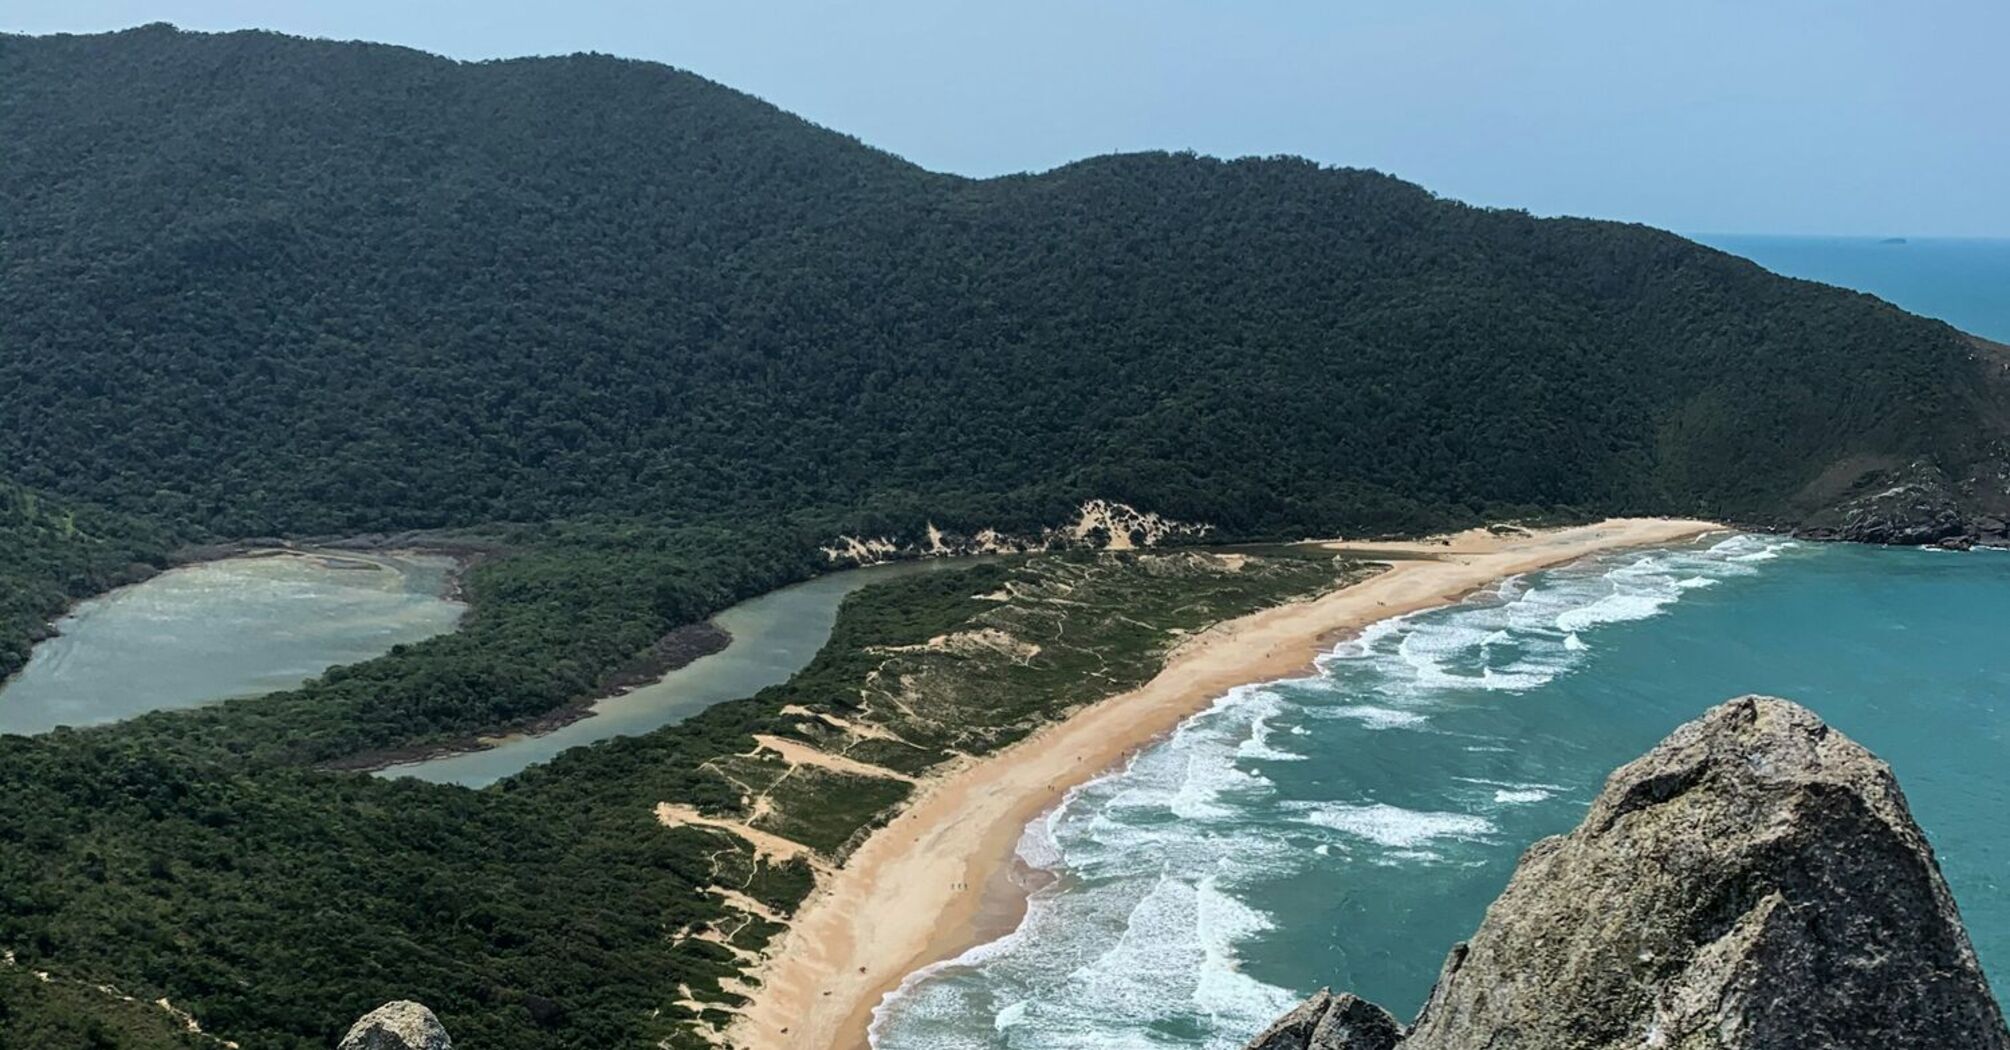 Scenic coastline view in Santa Catarina, Brazil